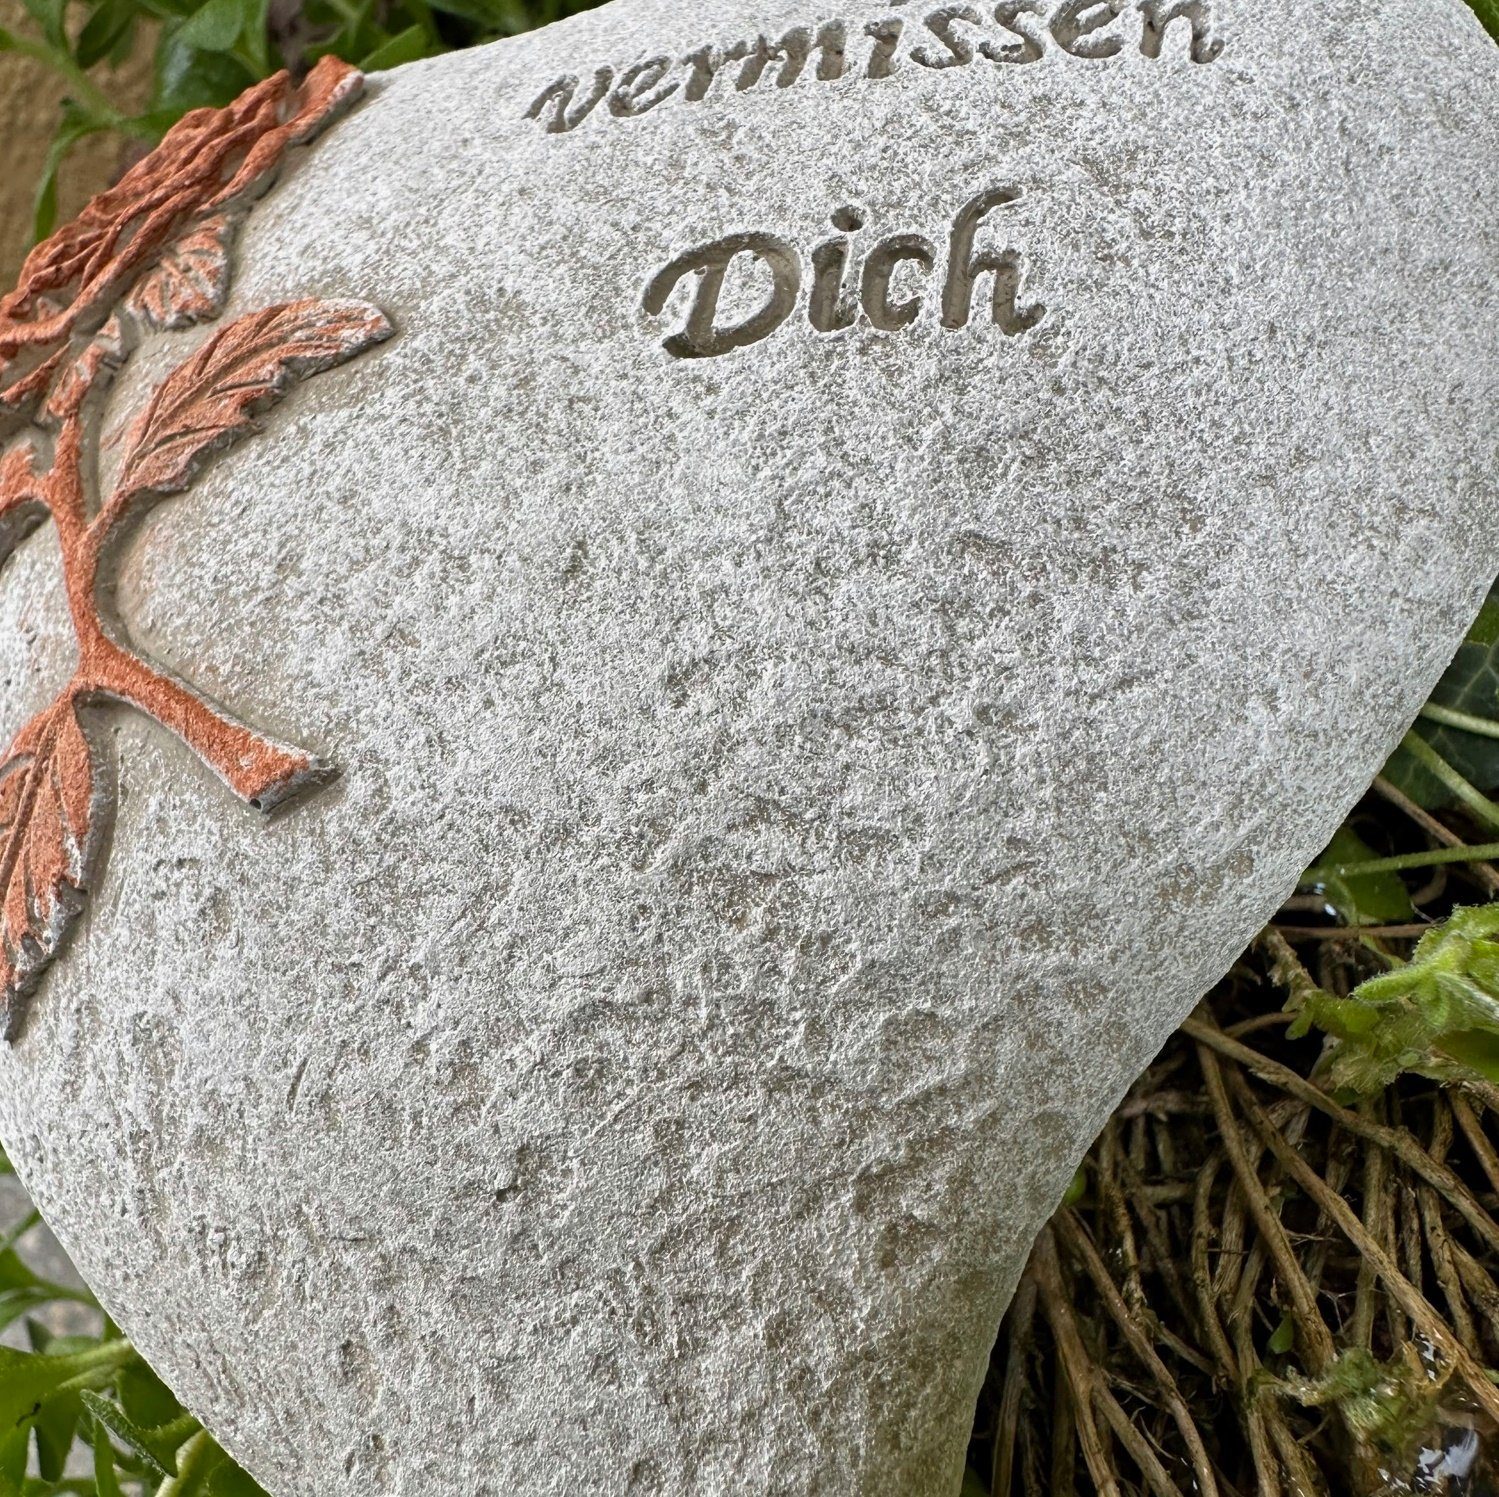 Gartenfigur Grabherz Grabschmuck Traue Grabdeko Dich Gedenkstein vermissen - Radami - Wir